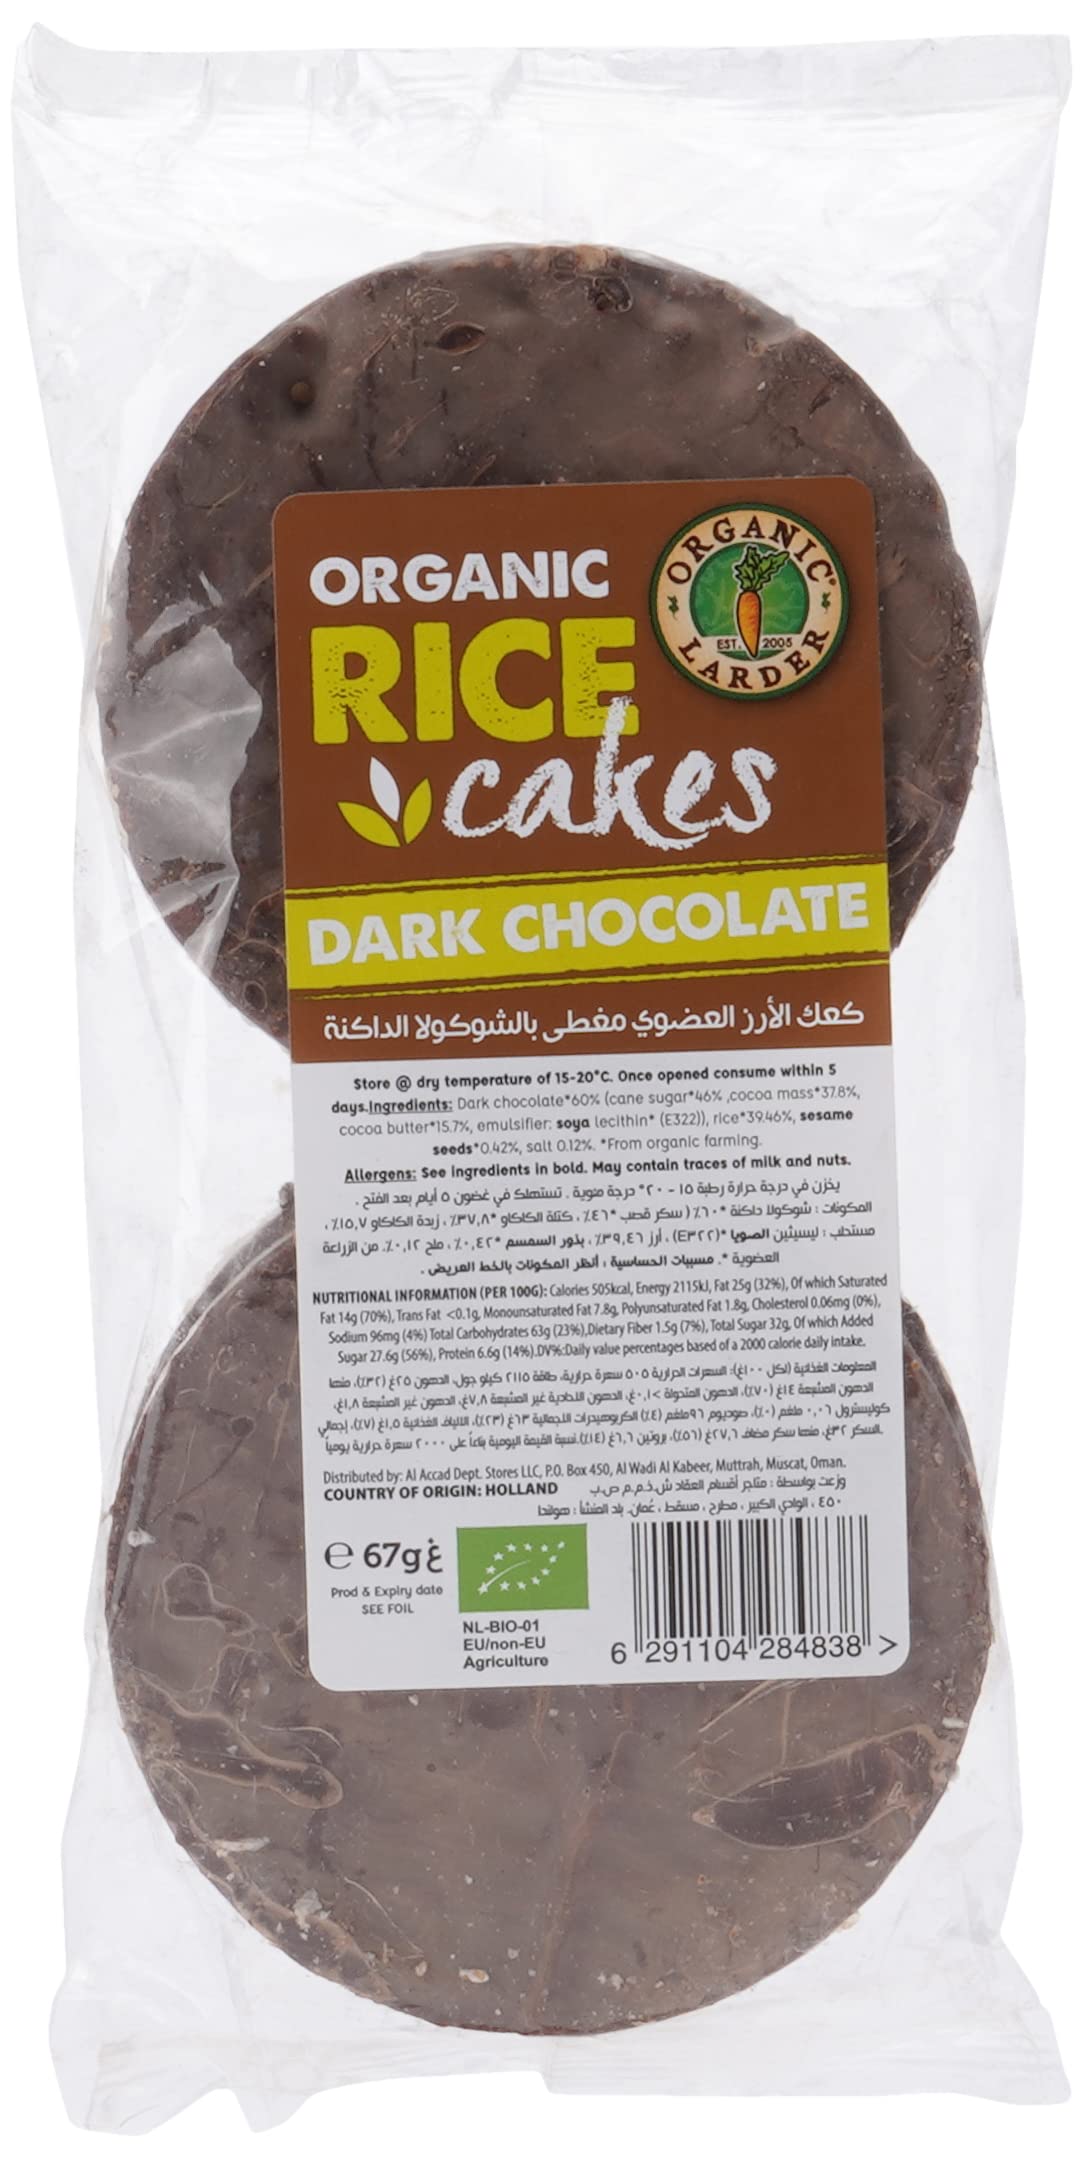 ORGANIC LARDER Rice Cakes With Dark Chocolate, 67g - Organic, Natural